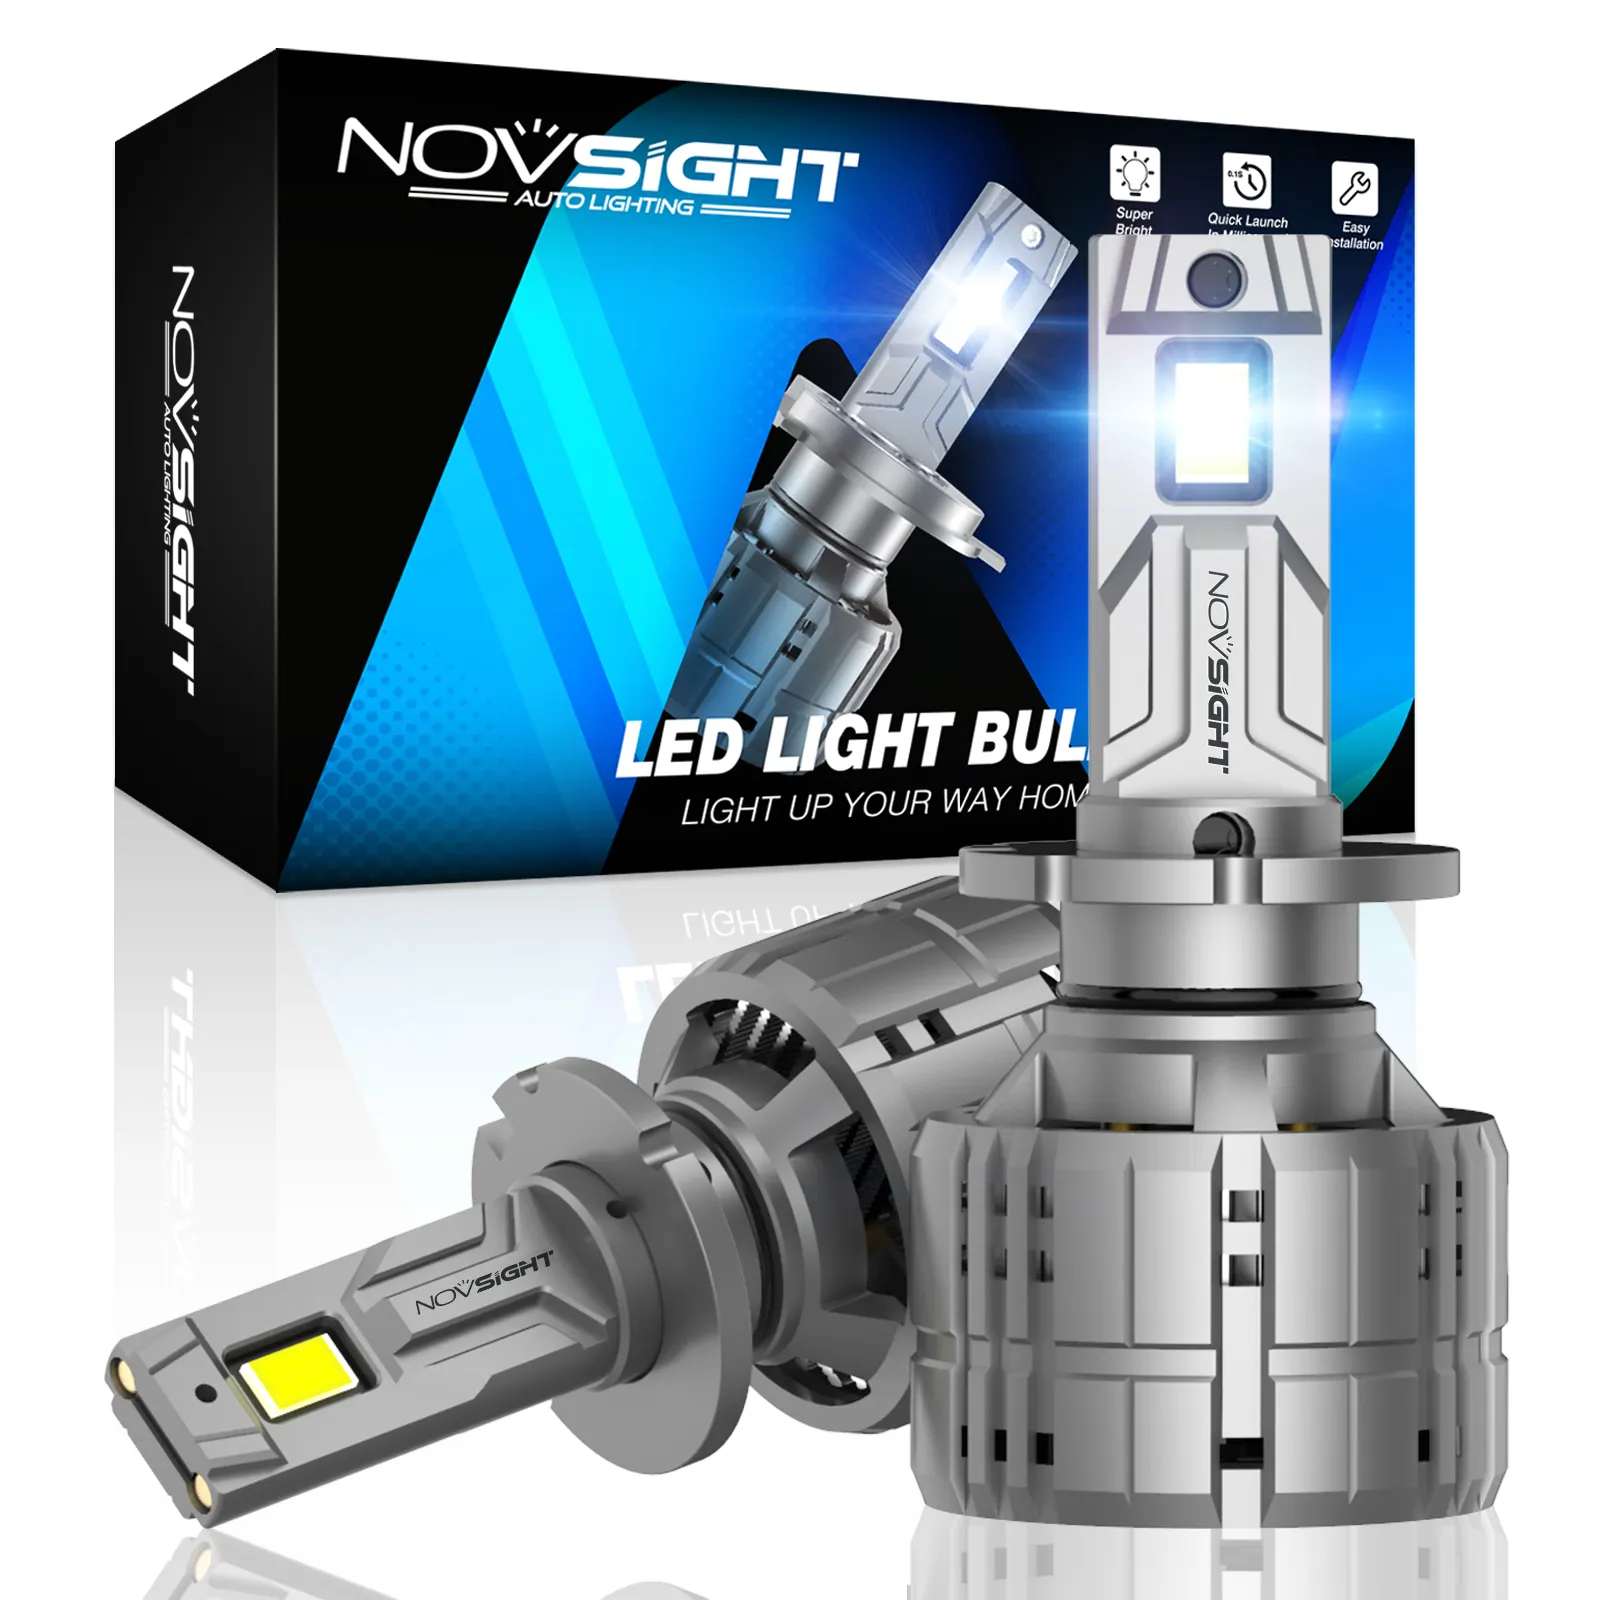 Novsight Высокая мощность 20000lm/лампа d4s светодиодные фары для последующего внедрения СПГ d1 d2 d3 H7 H11 для автомобилей и мотоциклов, 200W светодиодные лампы h4 Автомобильные фары